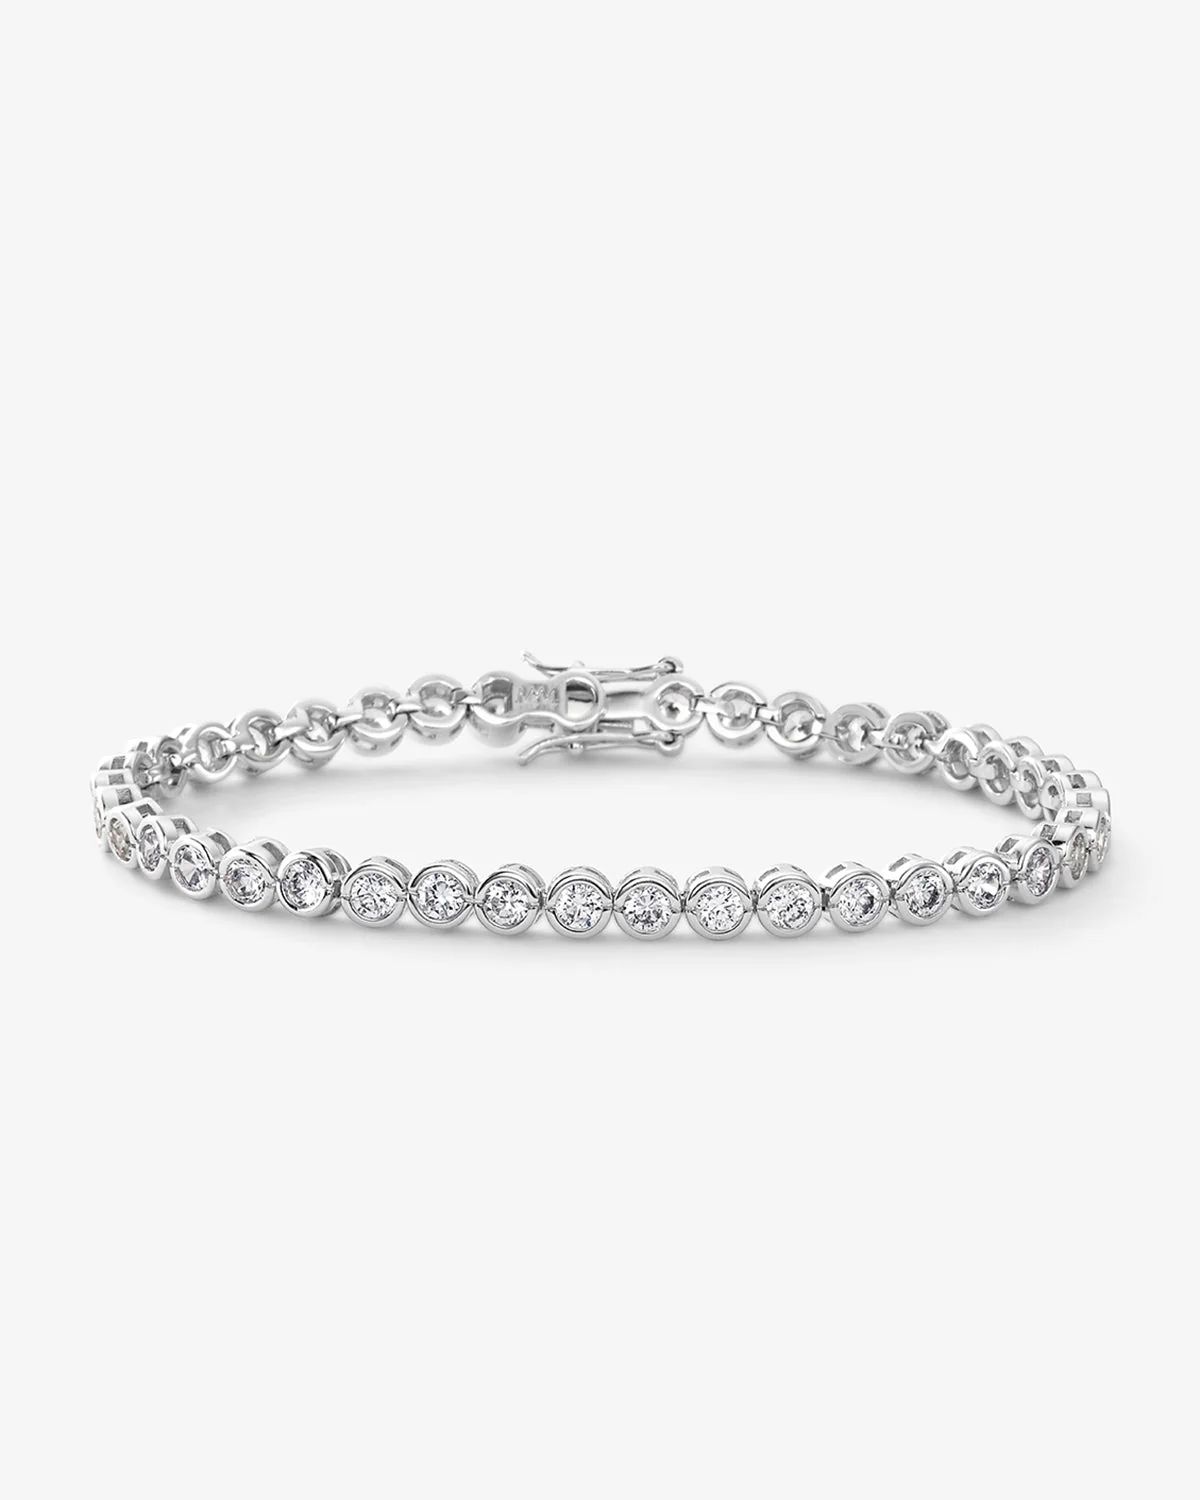 Baroness Tennis Bracelet - Silver|White Diamondettes | Melinda Maria